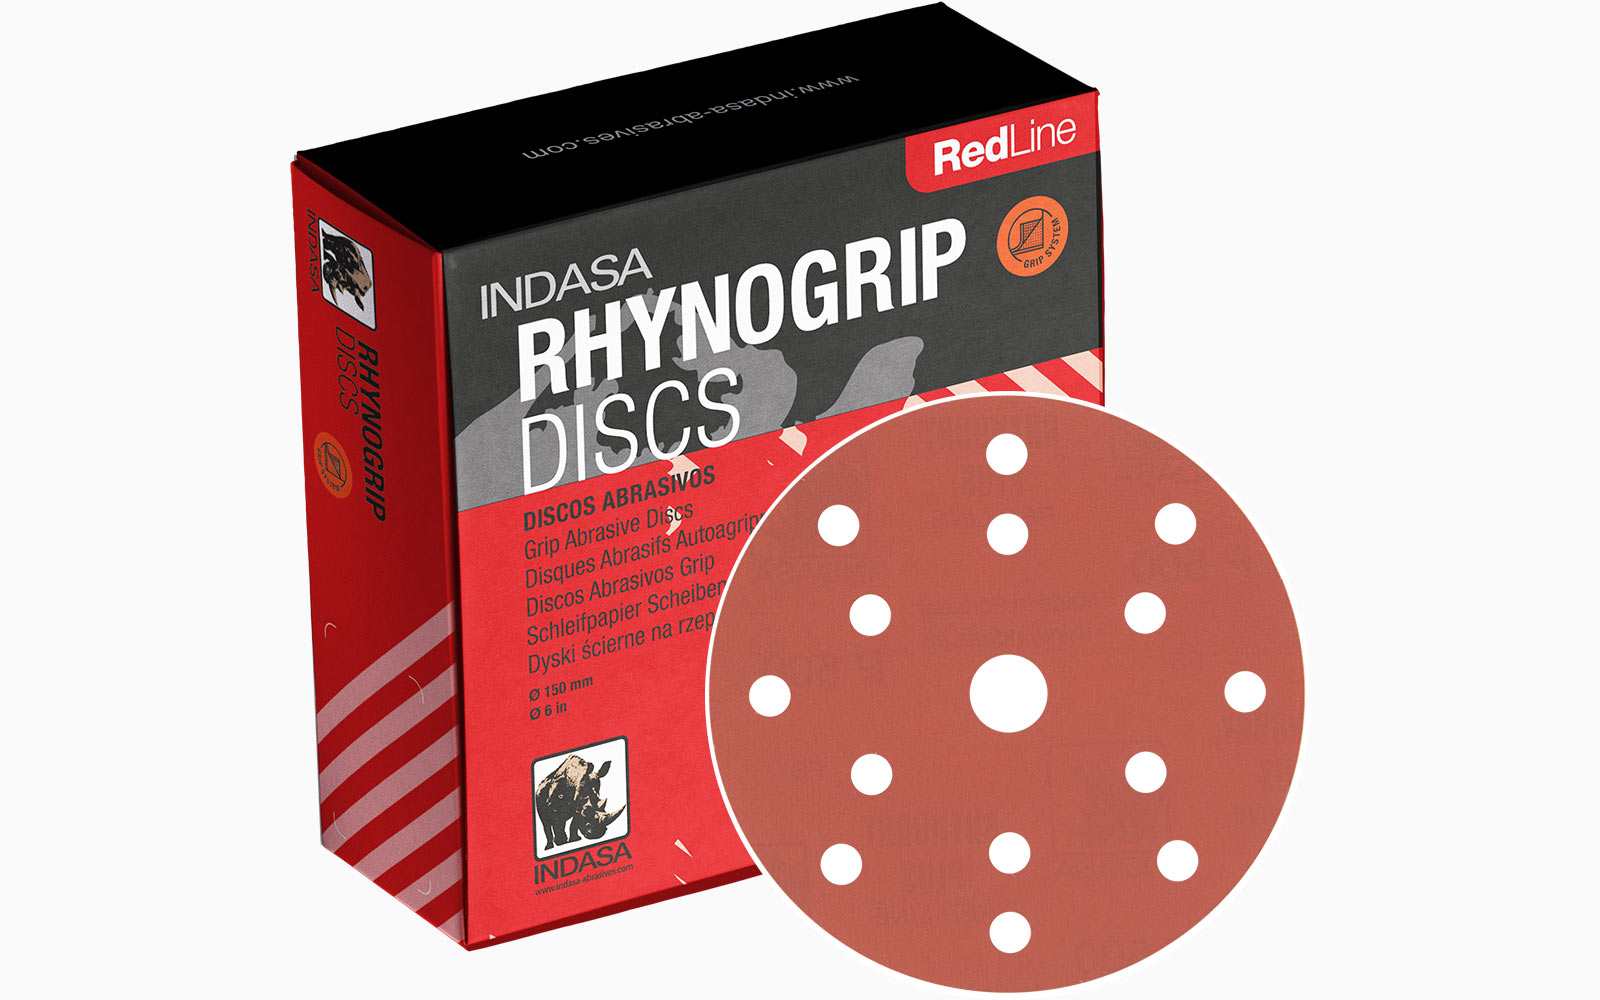 Rhynogrip Red Line INDASA Abrasives